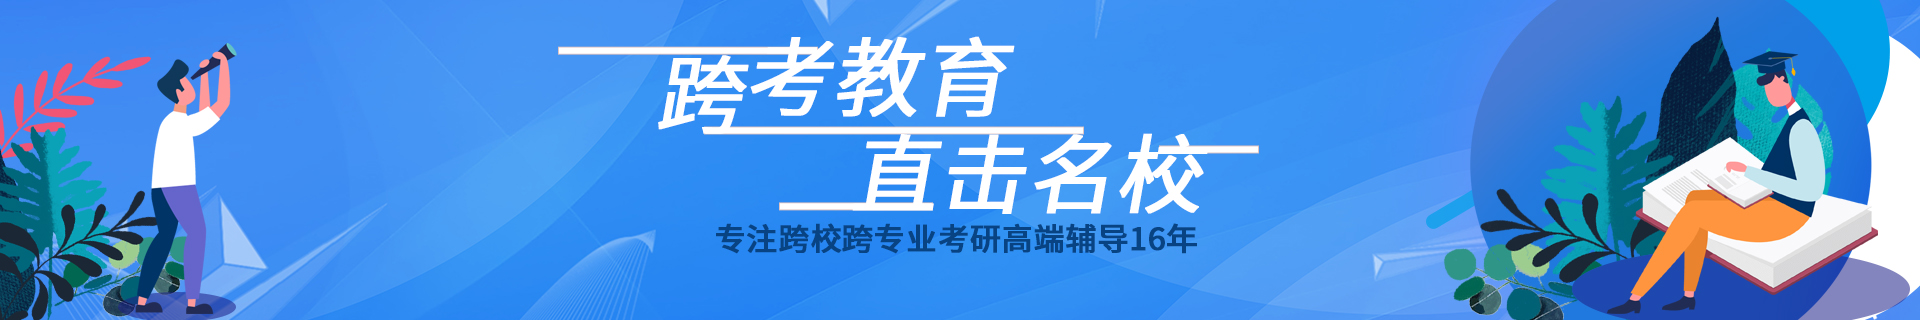 上海浦东海洋科技跨考教育培训机构